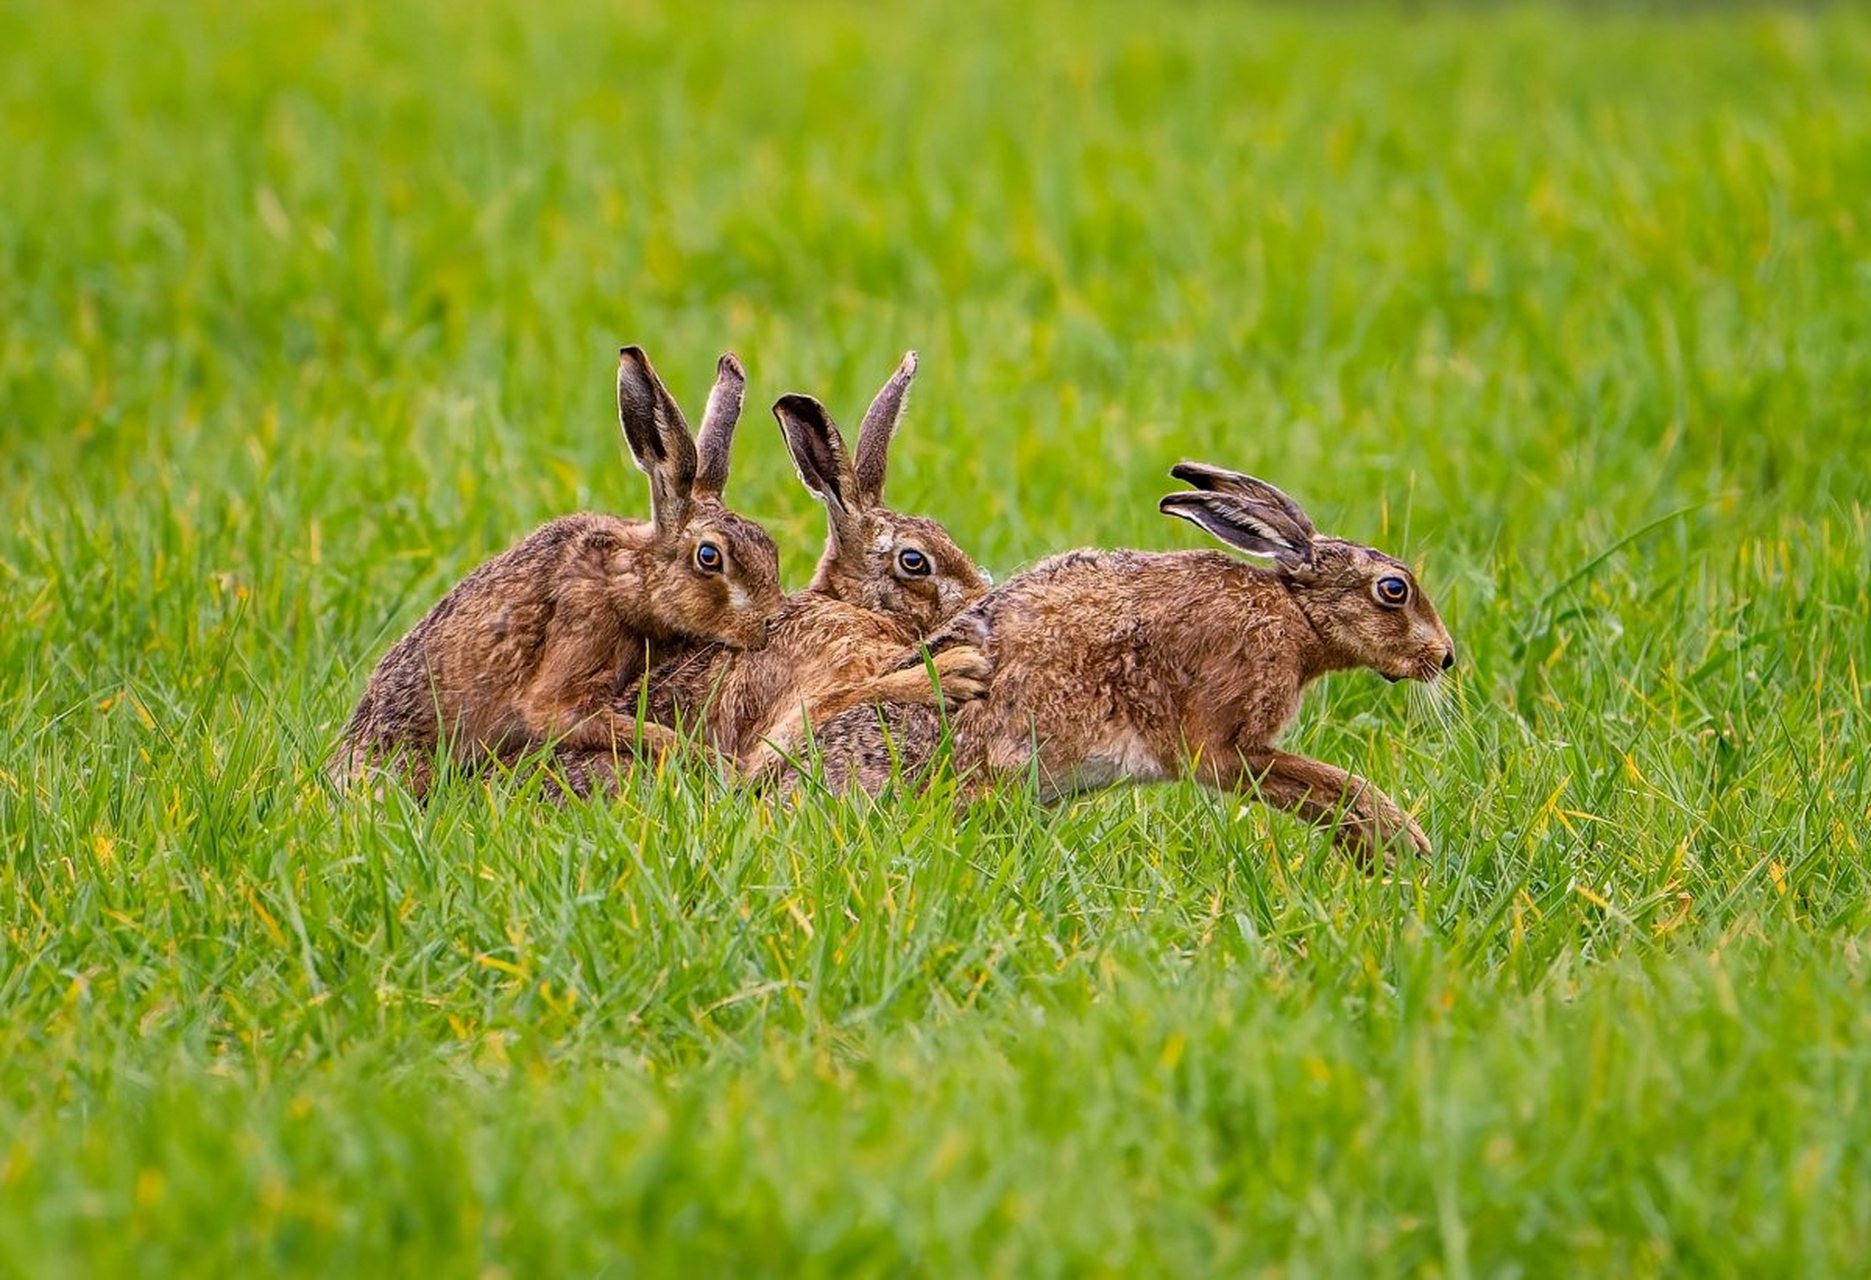 兔子在草地上跳跃,一蹦一蹦地像是舞动的音符